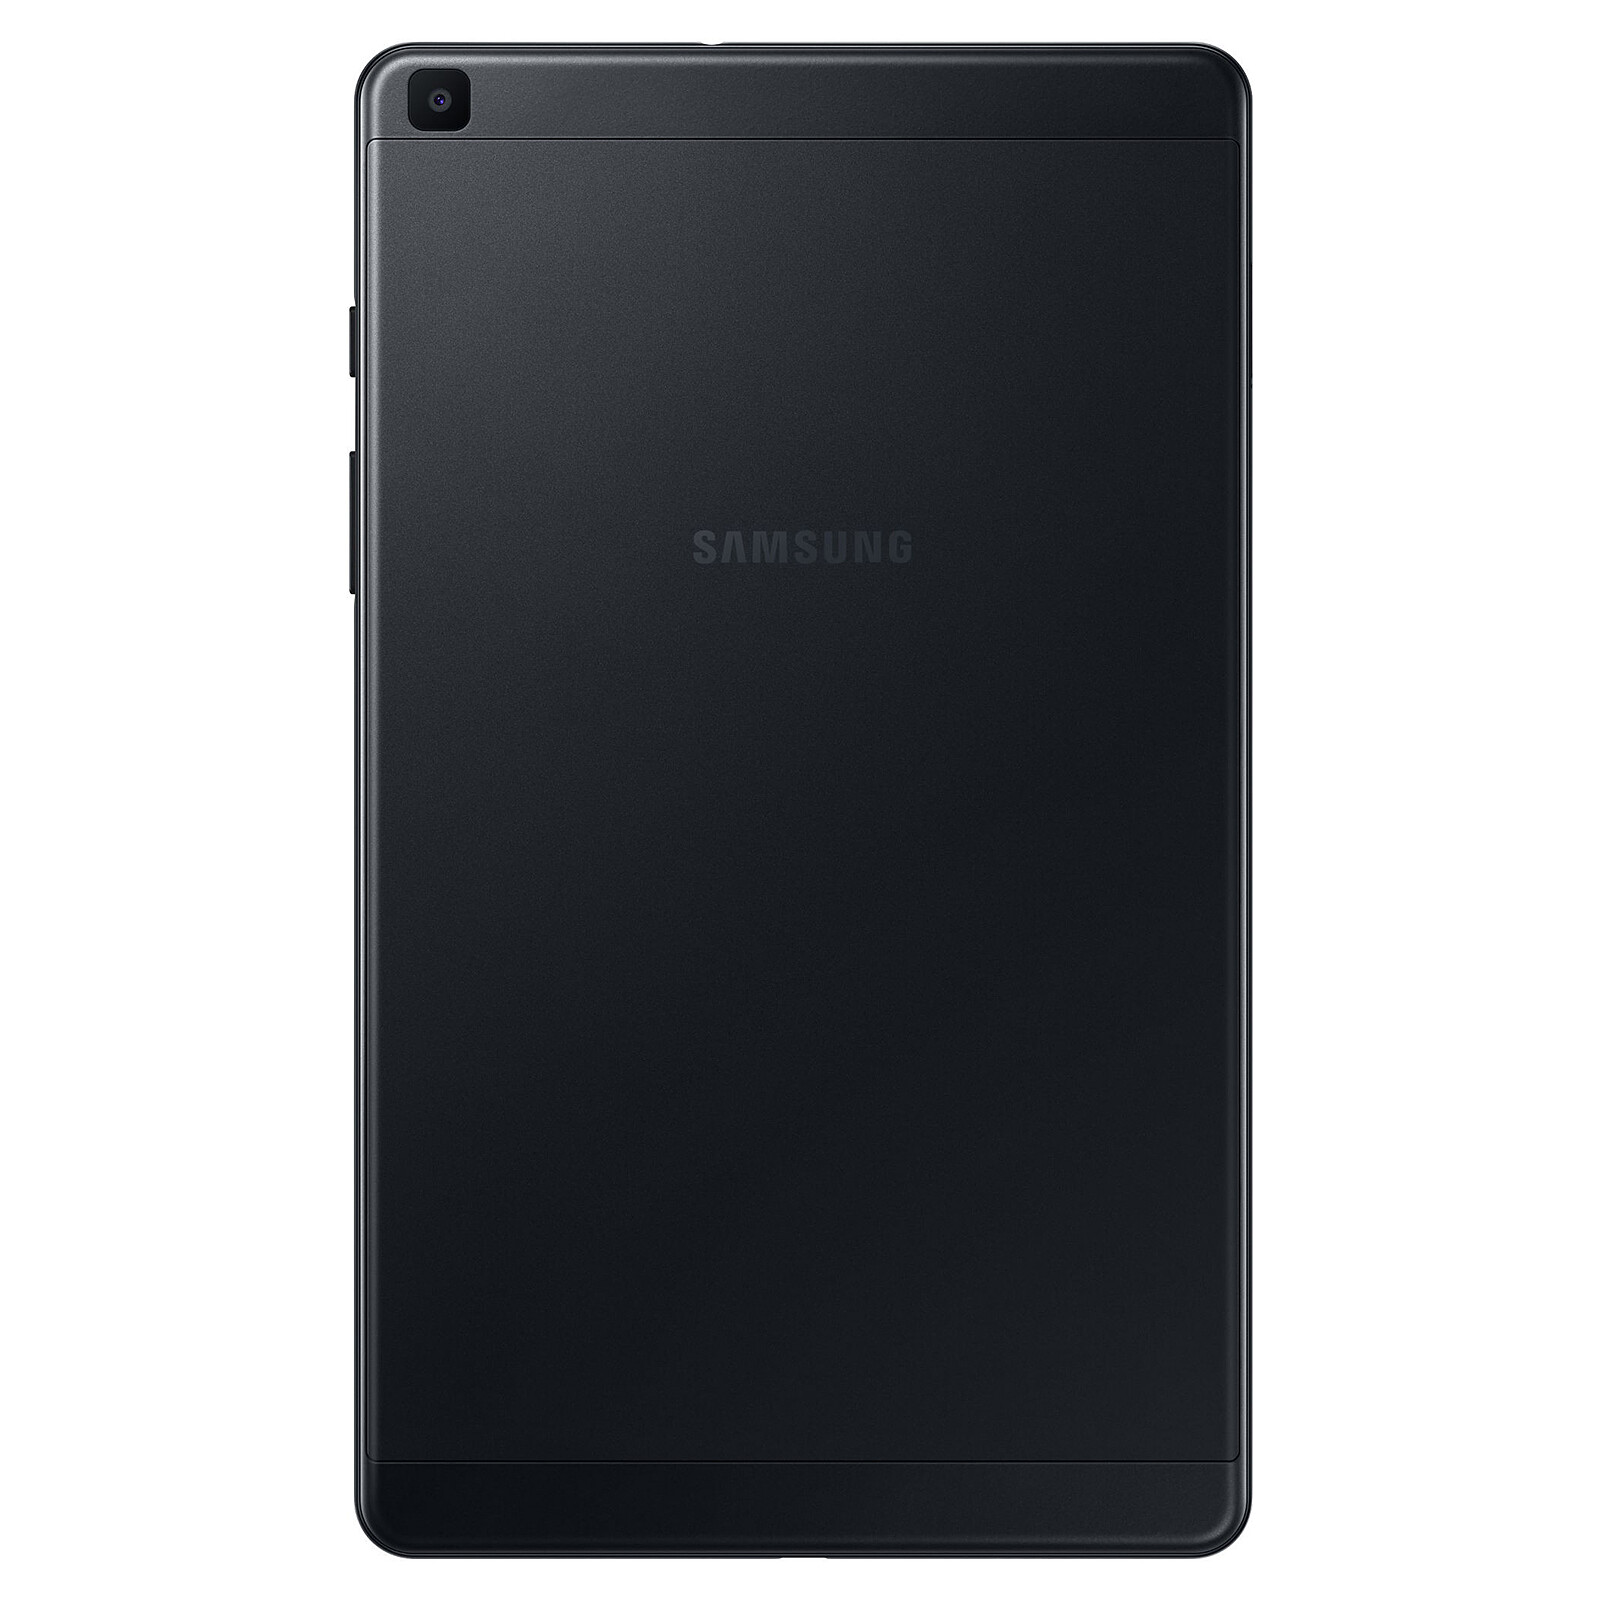 SAMSUNG Galaxy Tab A - Tablet Android de 8.0 pulgadas, 64 GB, Wi-Fi,  ligera, pantalla grande, batería de larga duración, color negro